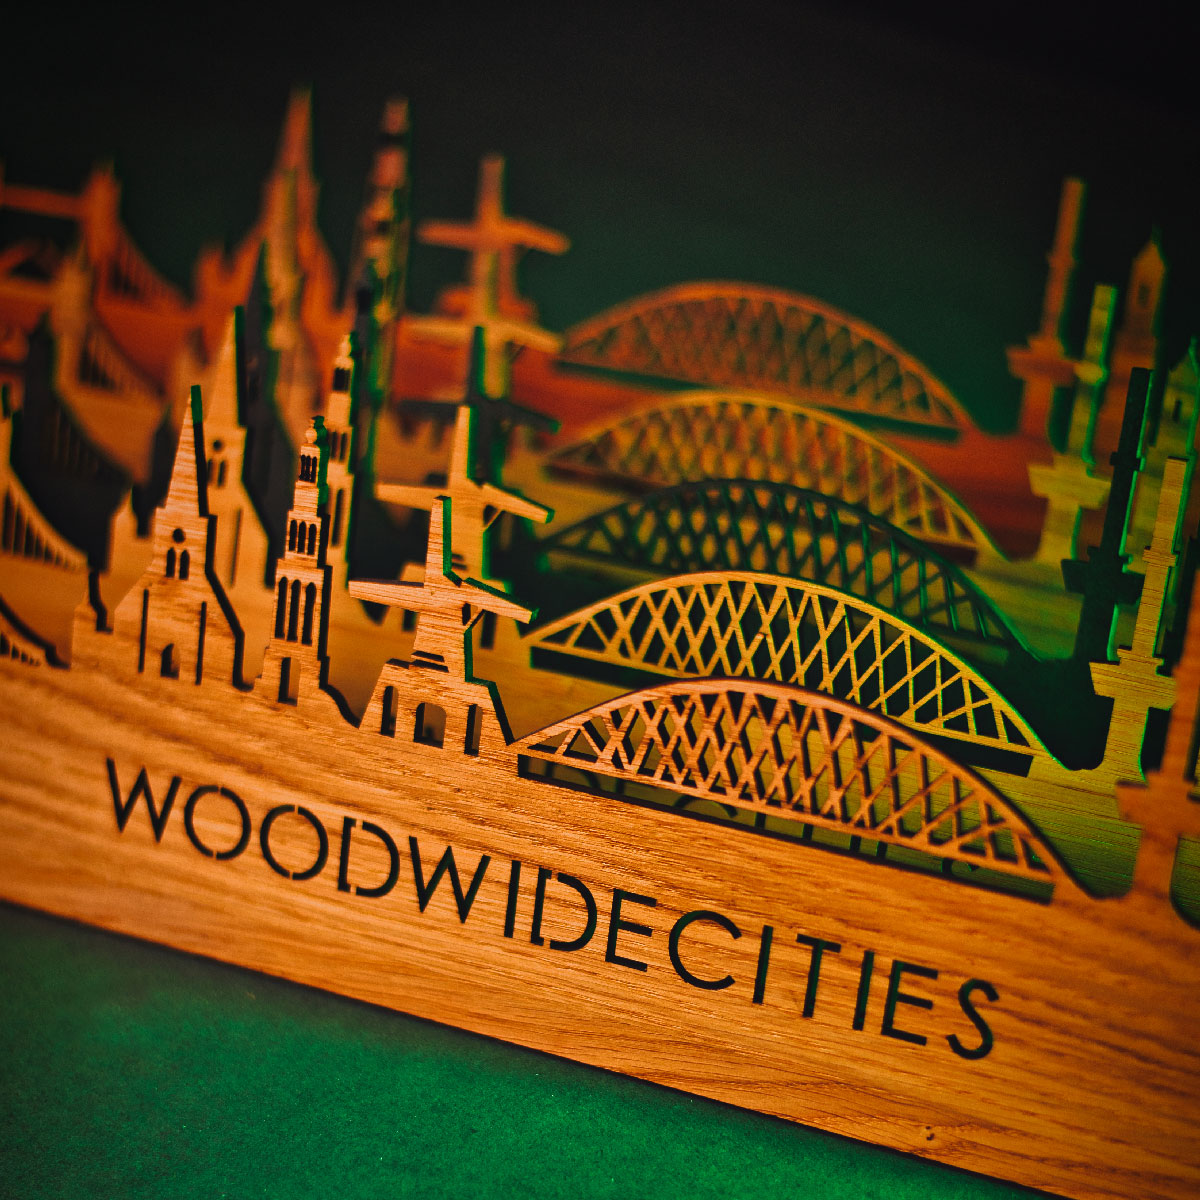 Skyline Klok Landgraaf Noten houten cadeau wanddecoratie relatiegeschenk van WoodWideCities